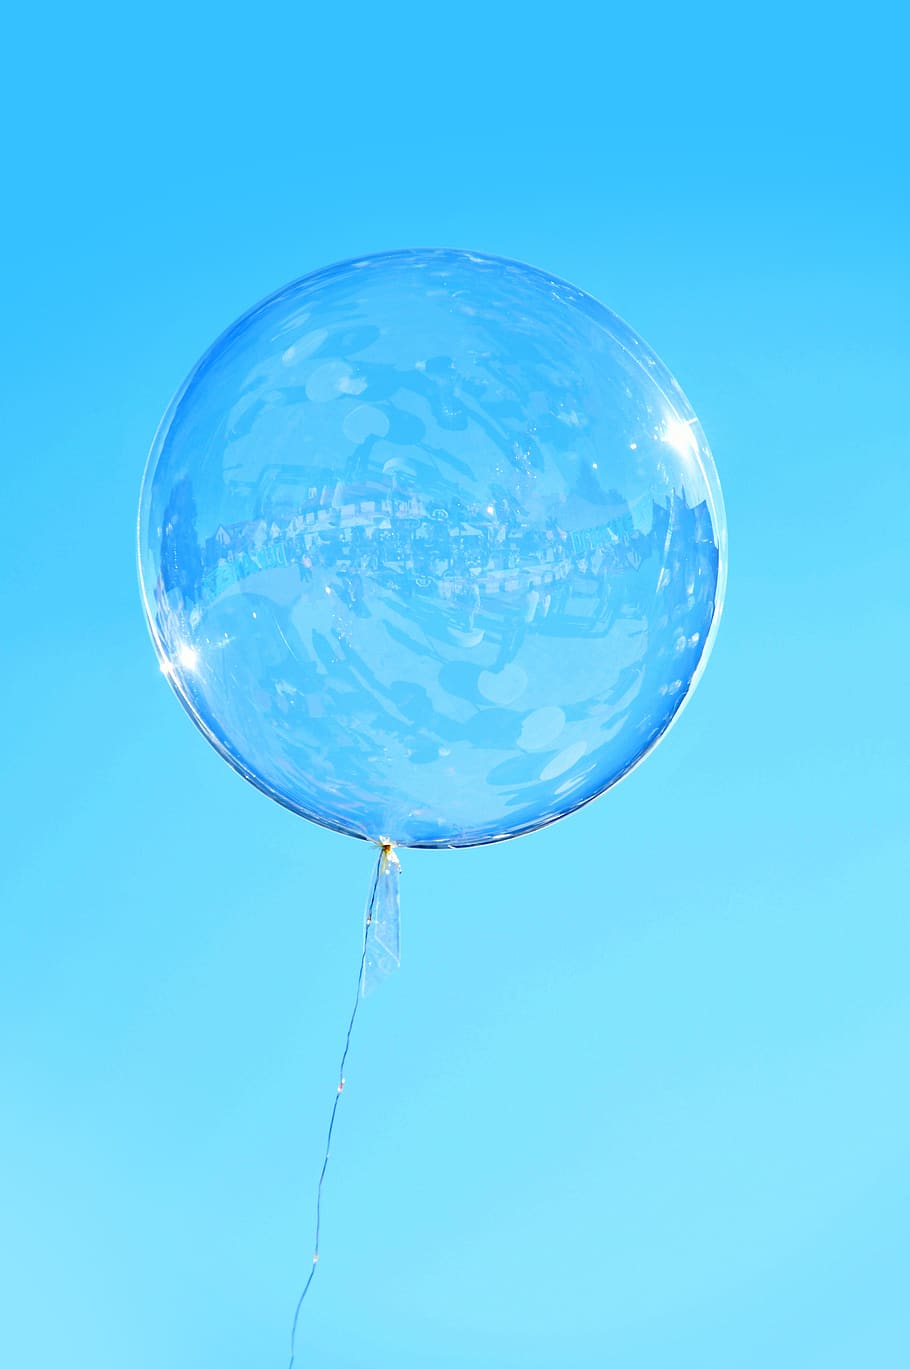 воздушные шары, воздушный шар, газовый баллон, летать, воздух, полет, ветер, надувной, хобби, фигурки воздушных шаров